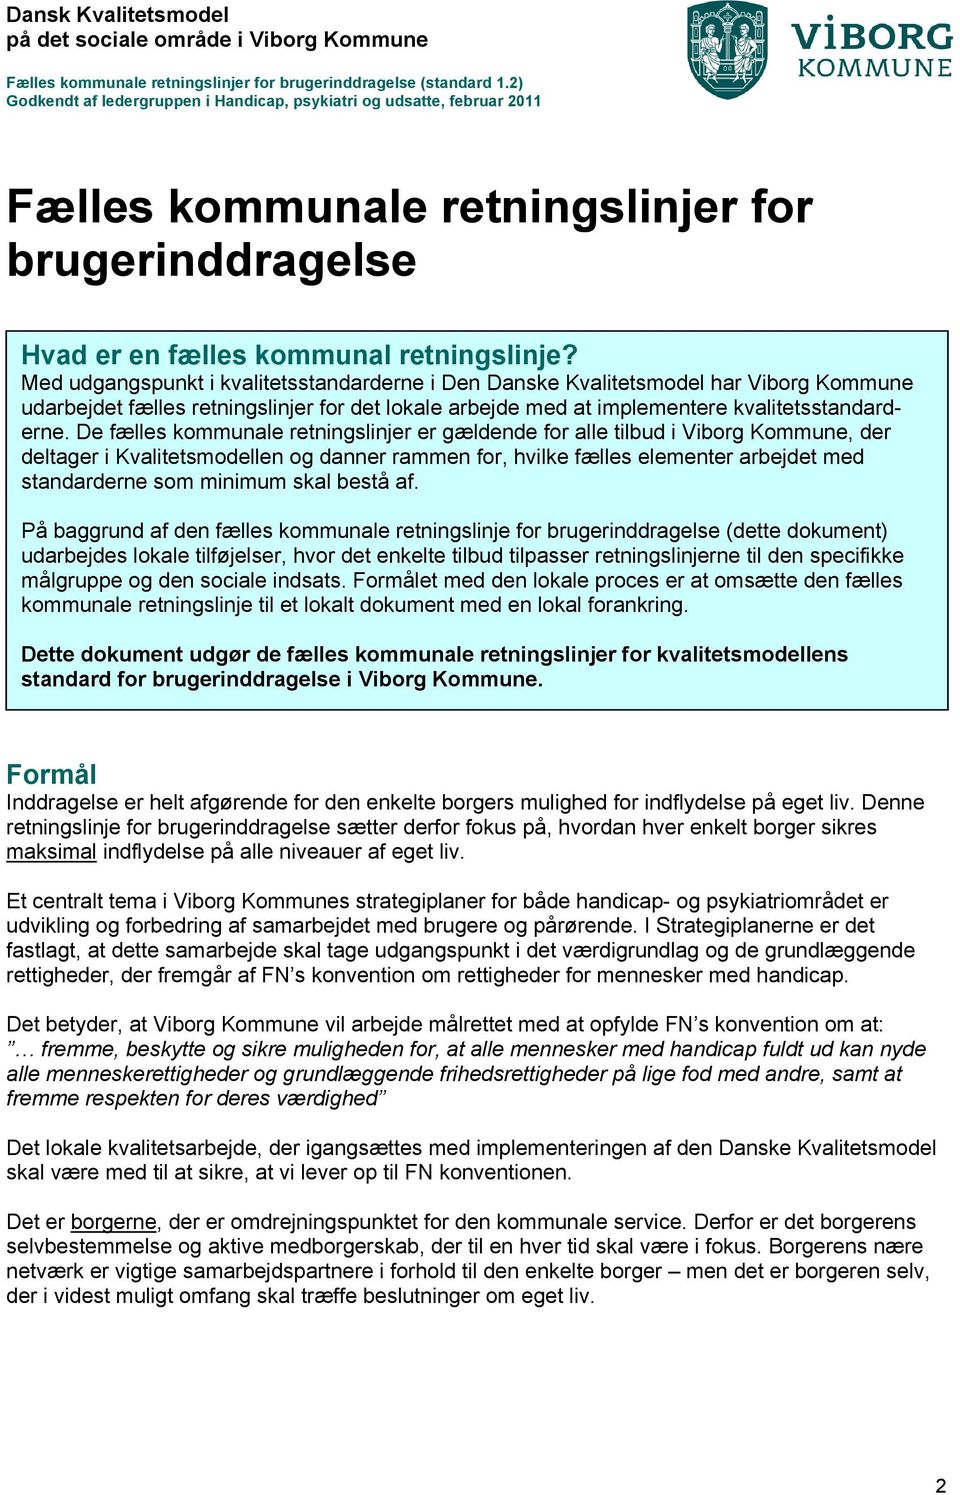 De fælles kommunale retningslinjer er gældende for alle tilbud i Viborg Kommune, der deltager i Kvalitetsmodellen og danner rammen for, hvilke fælles elementer arbejdet med standarderne som minimum